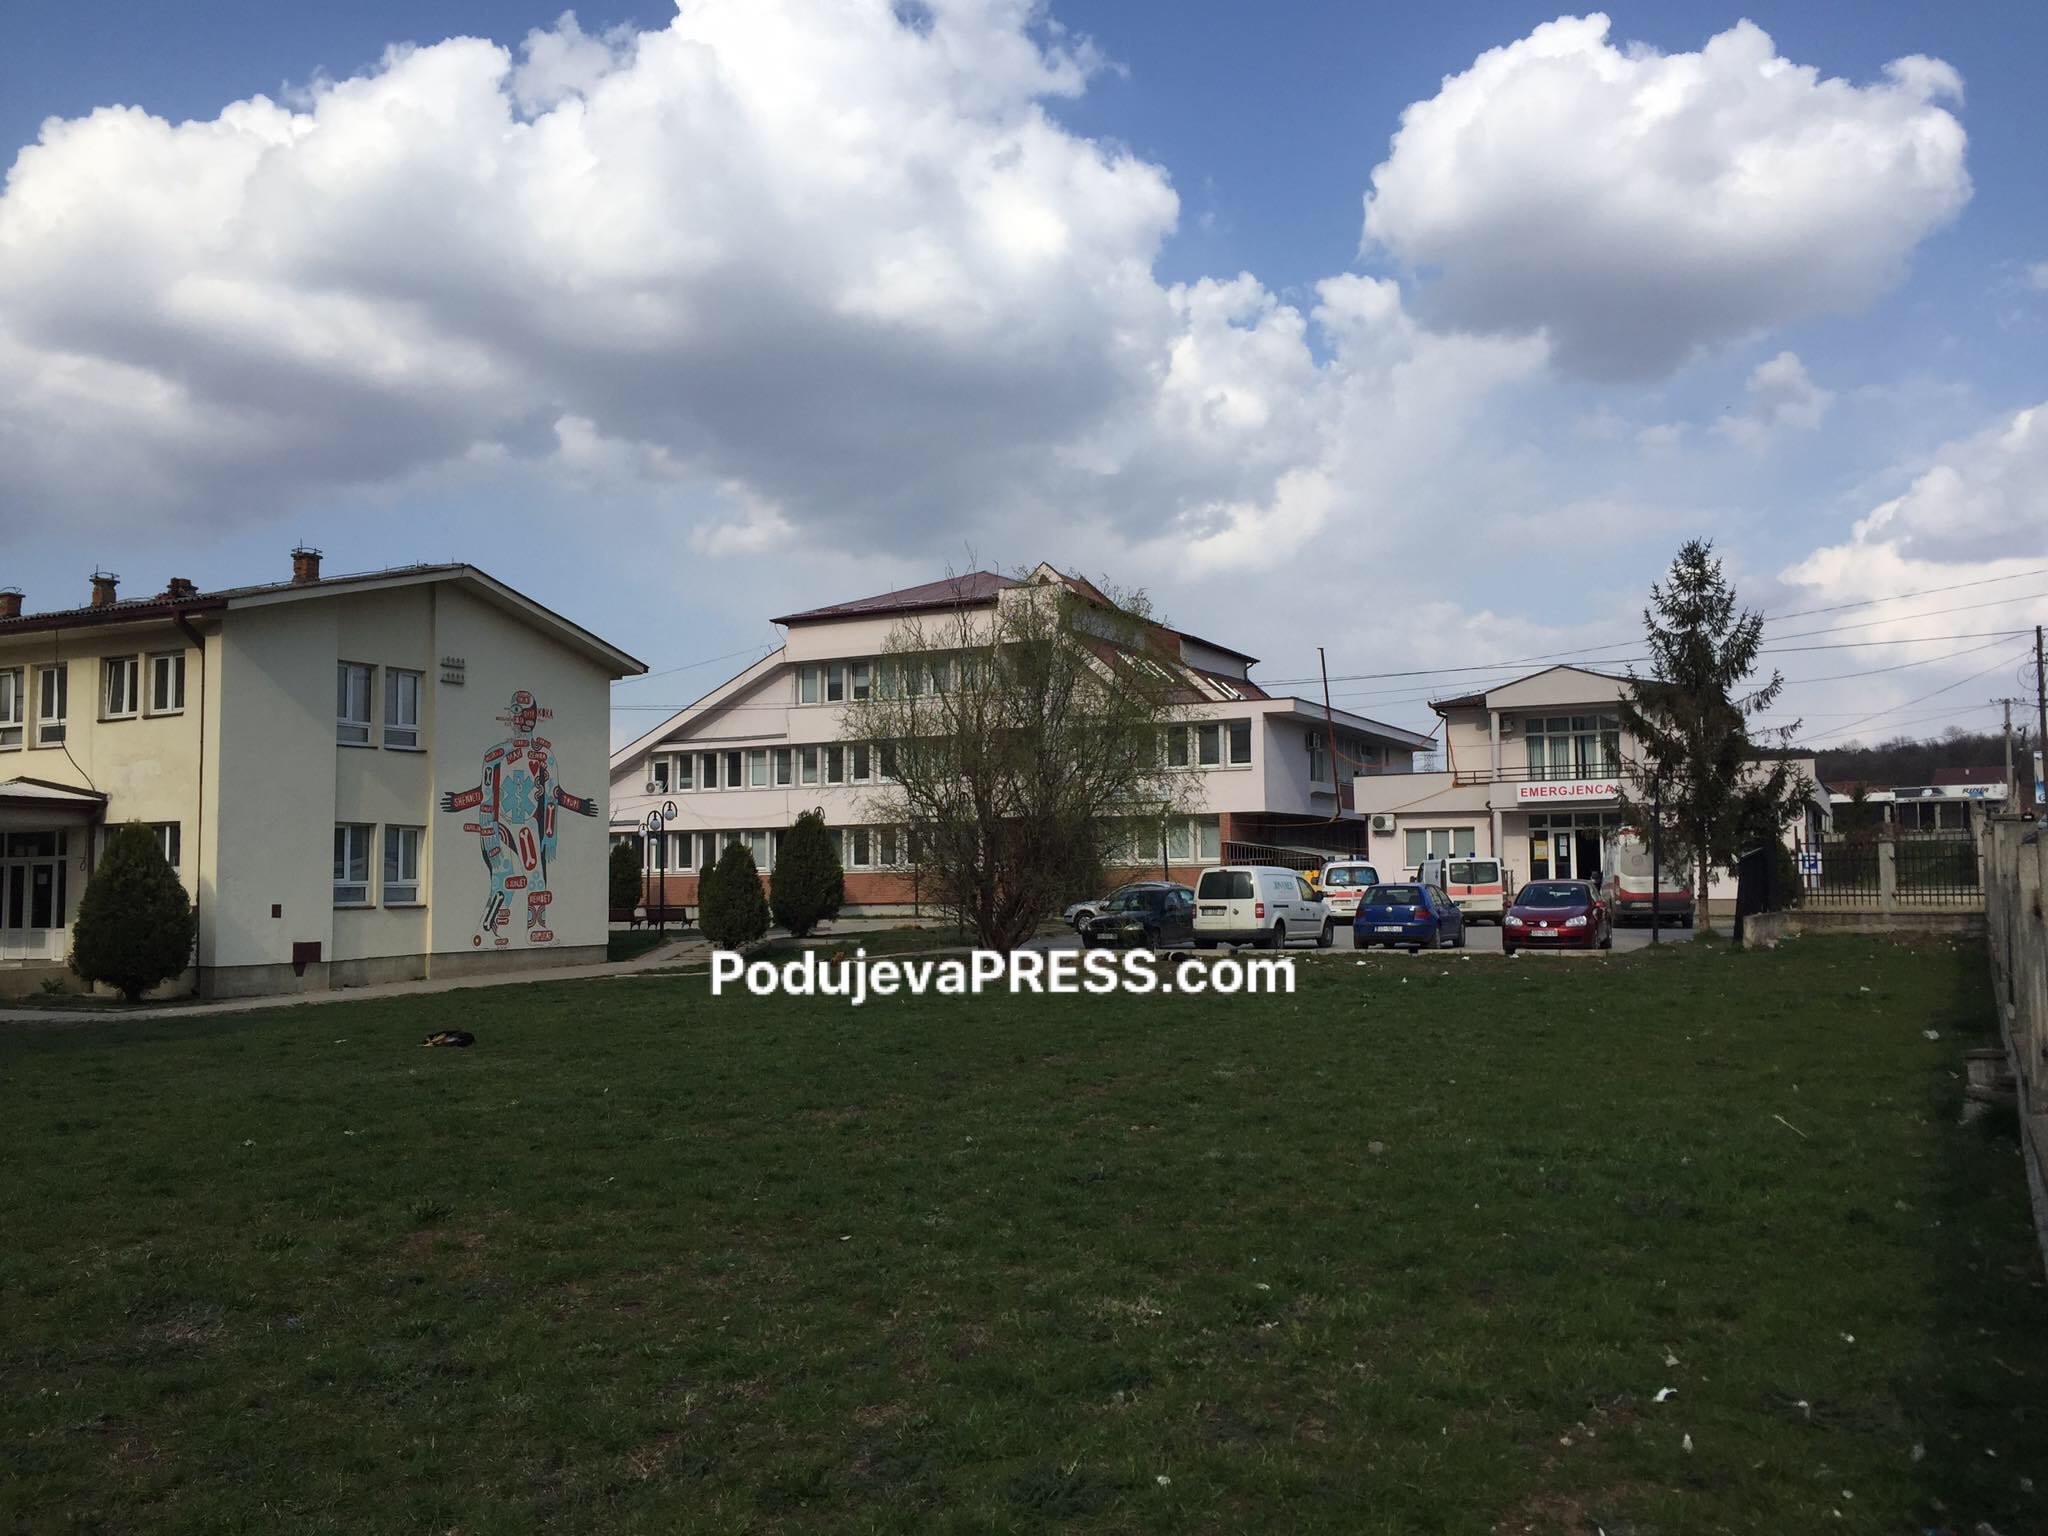  Komuna e Podujevës keqpërdori buxhetin duke blerë pajisje mjekësore me çmime shumë të larta (VIDEO)